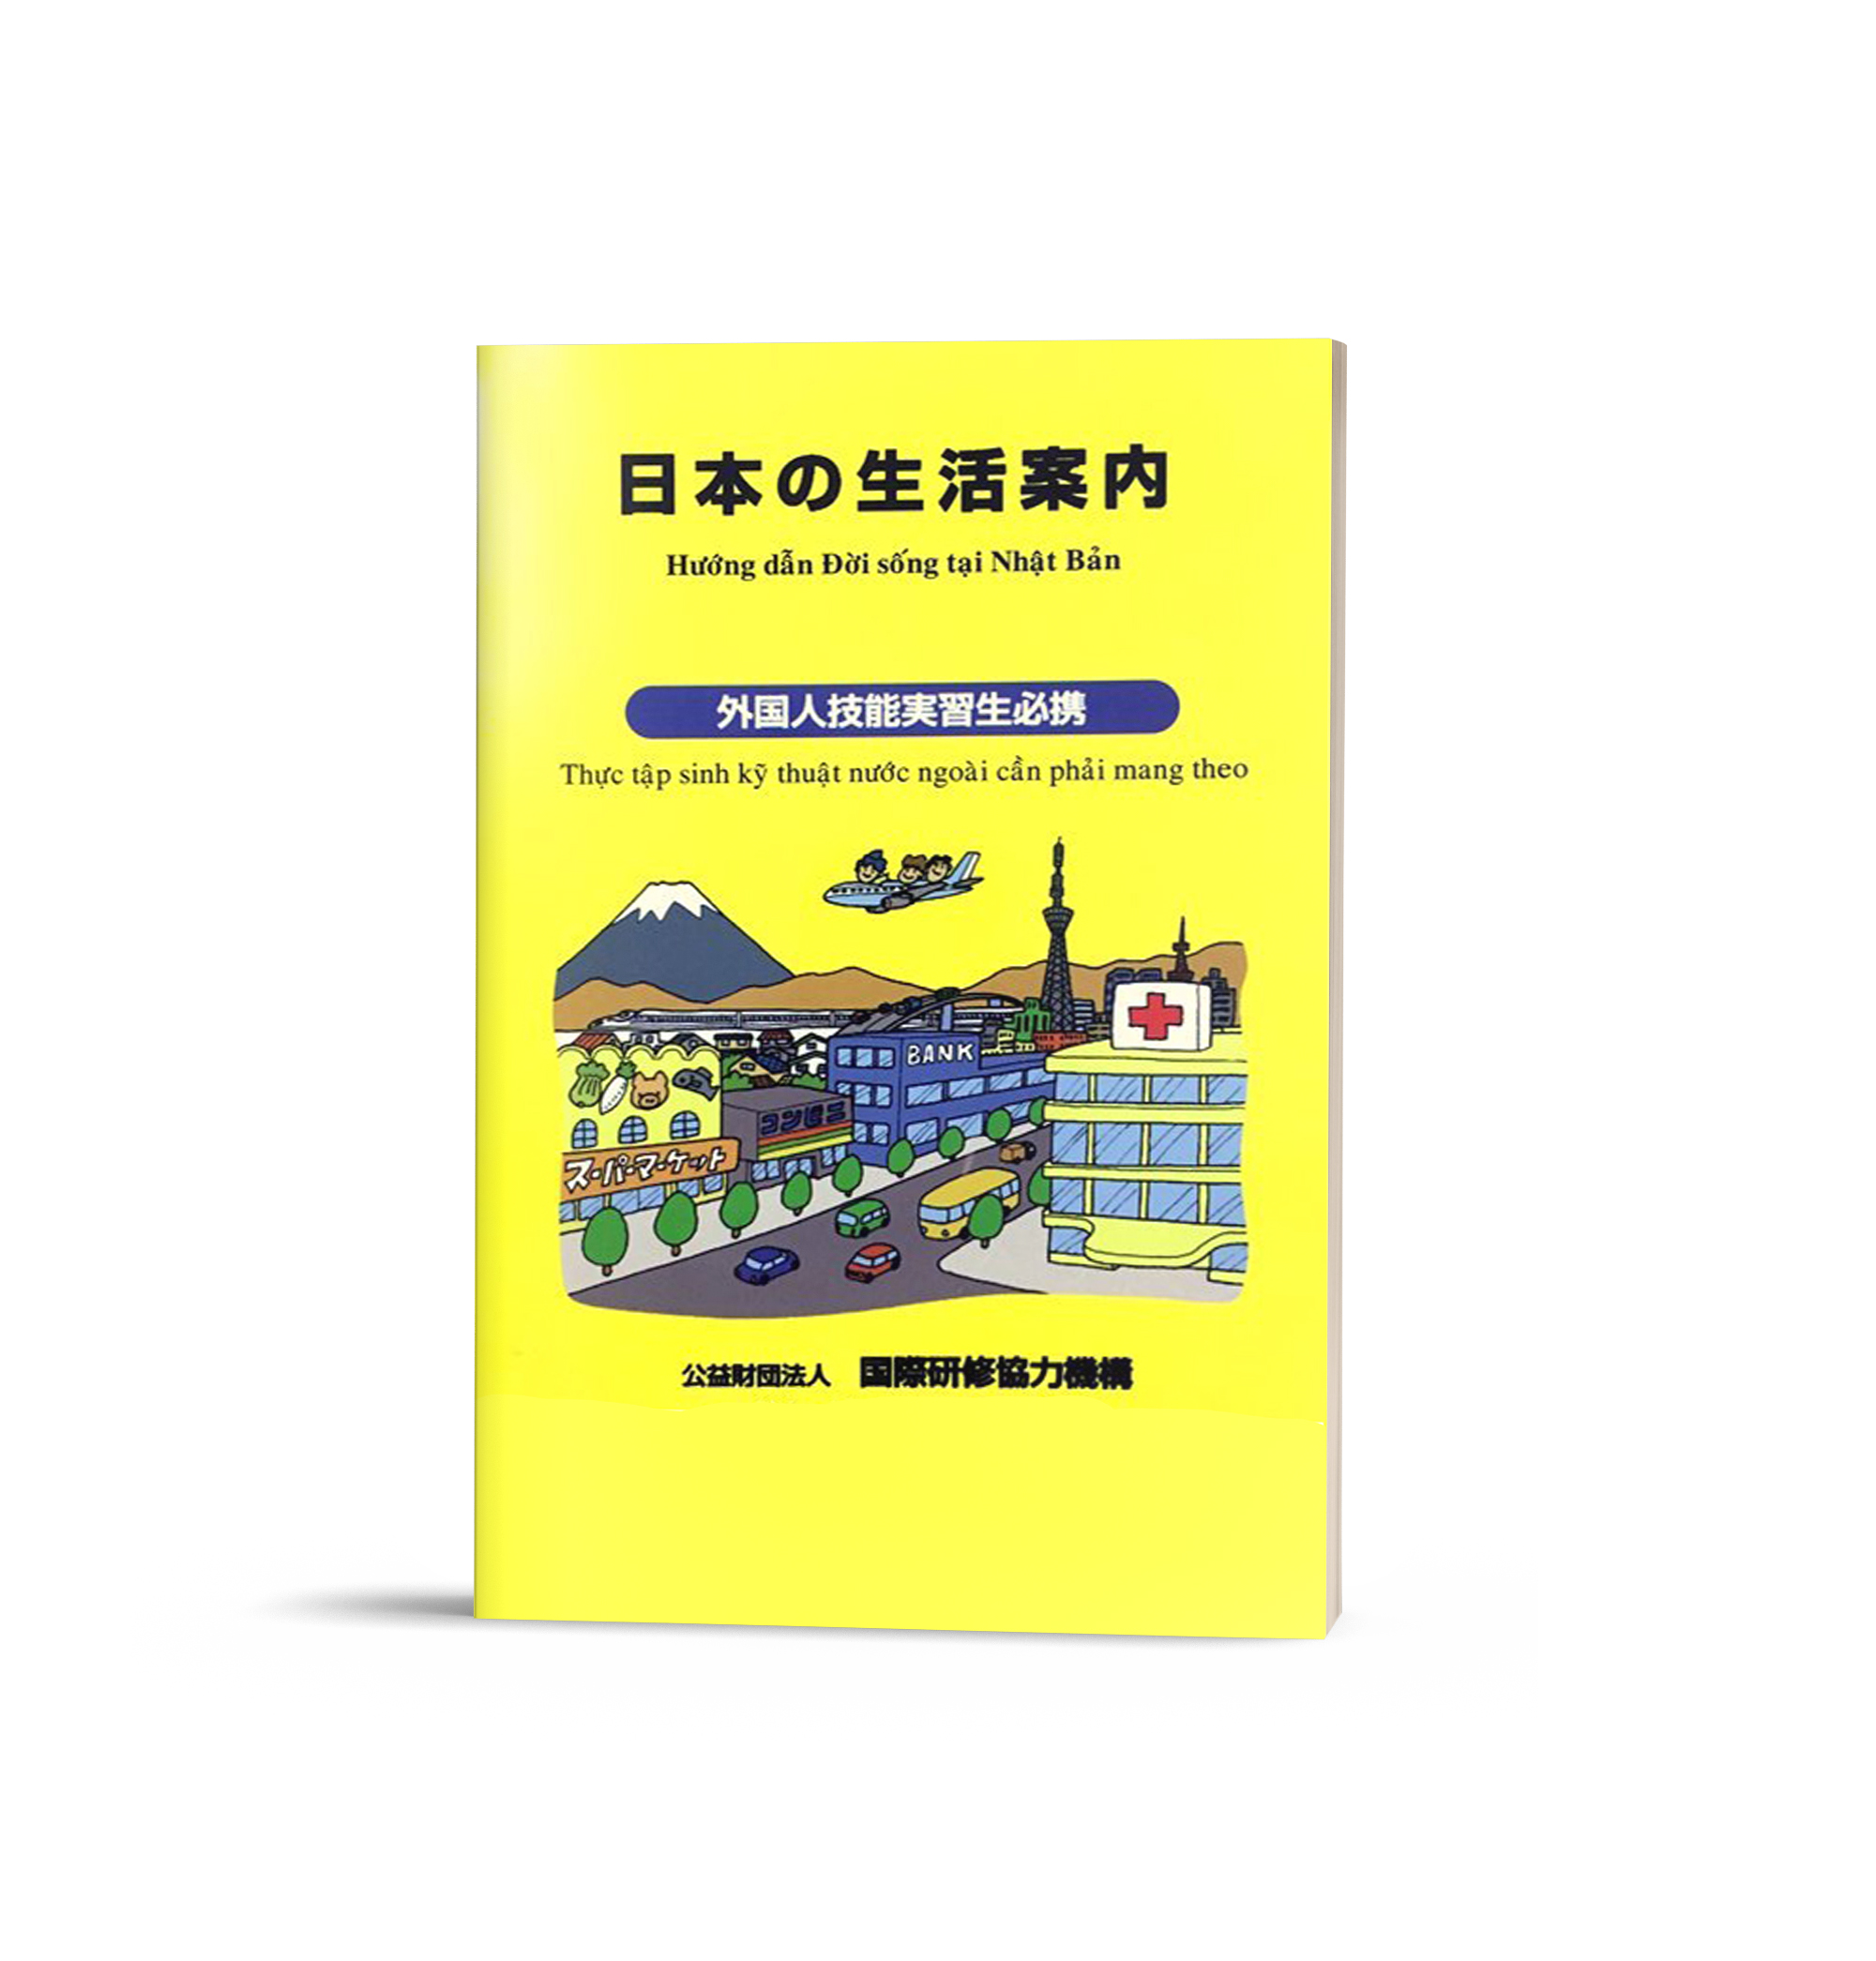 Hướng dẫn đời sống tại Nhật Bản – Thực tập sinh kỹ thuật nước ngoài cần  mang theo – Sách Tiếng Nhật